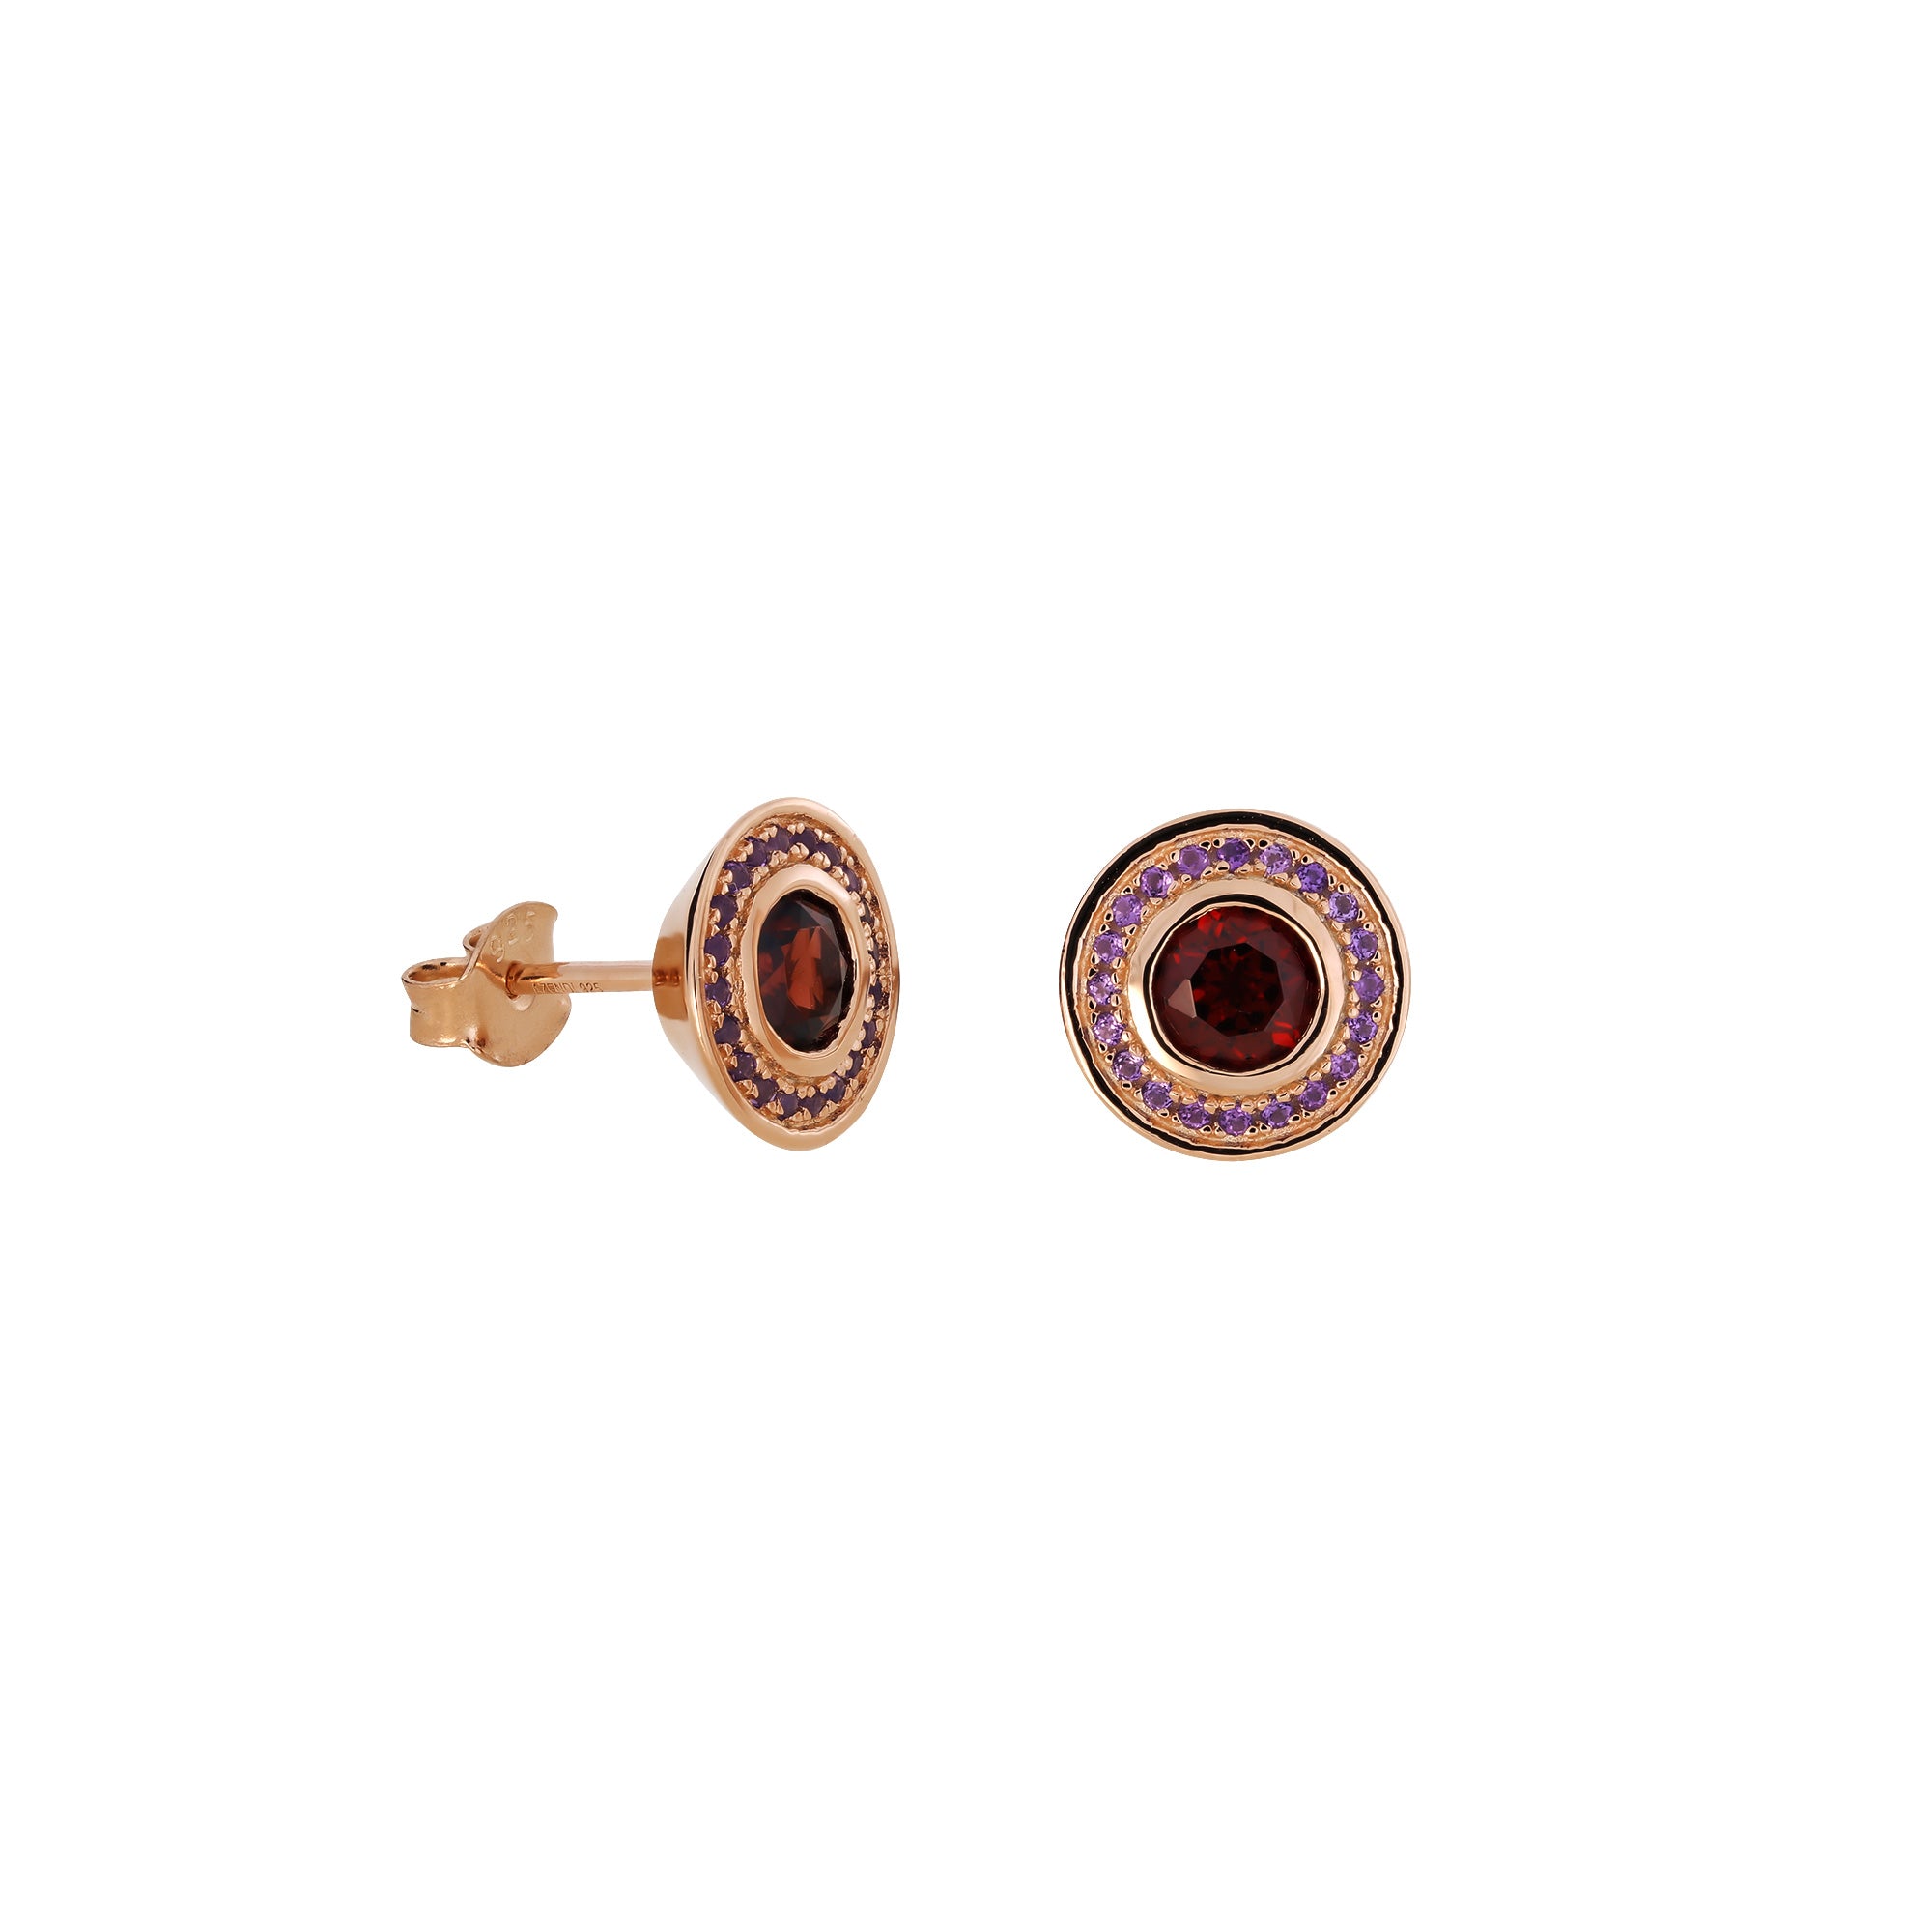 Garnet & Amethyst Stud Earrings in Rose Gold Vermeil